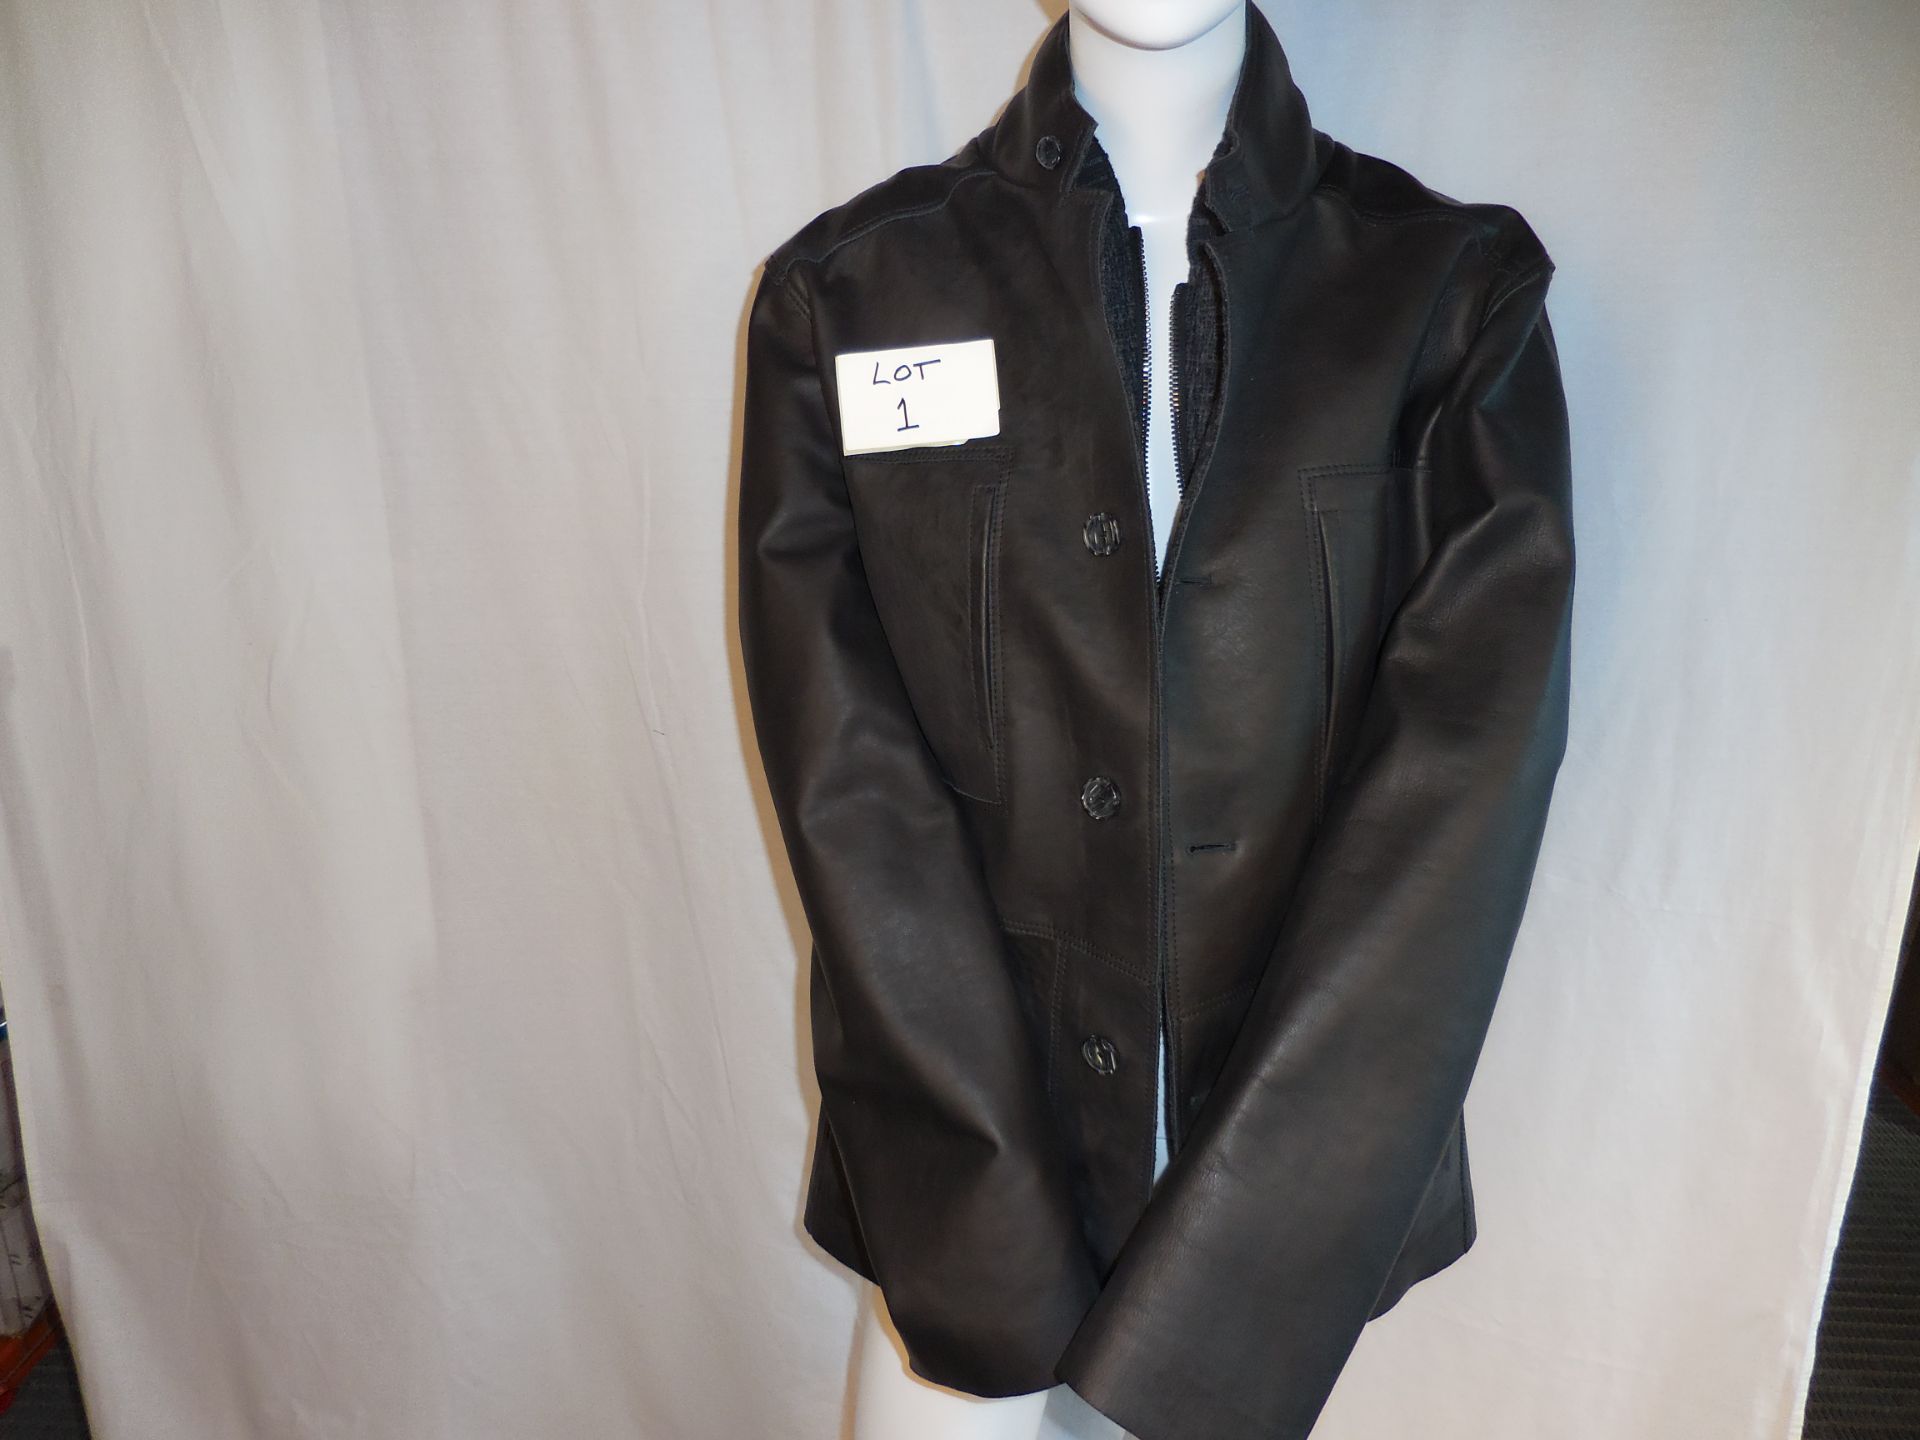 Newsclosed-Arm Jacket Colour Noir Size 52 Retail £2850